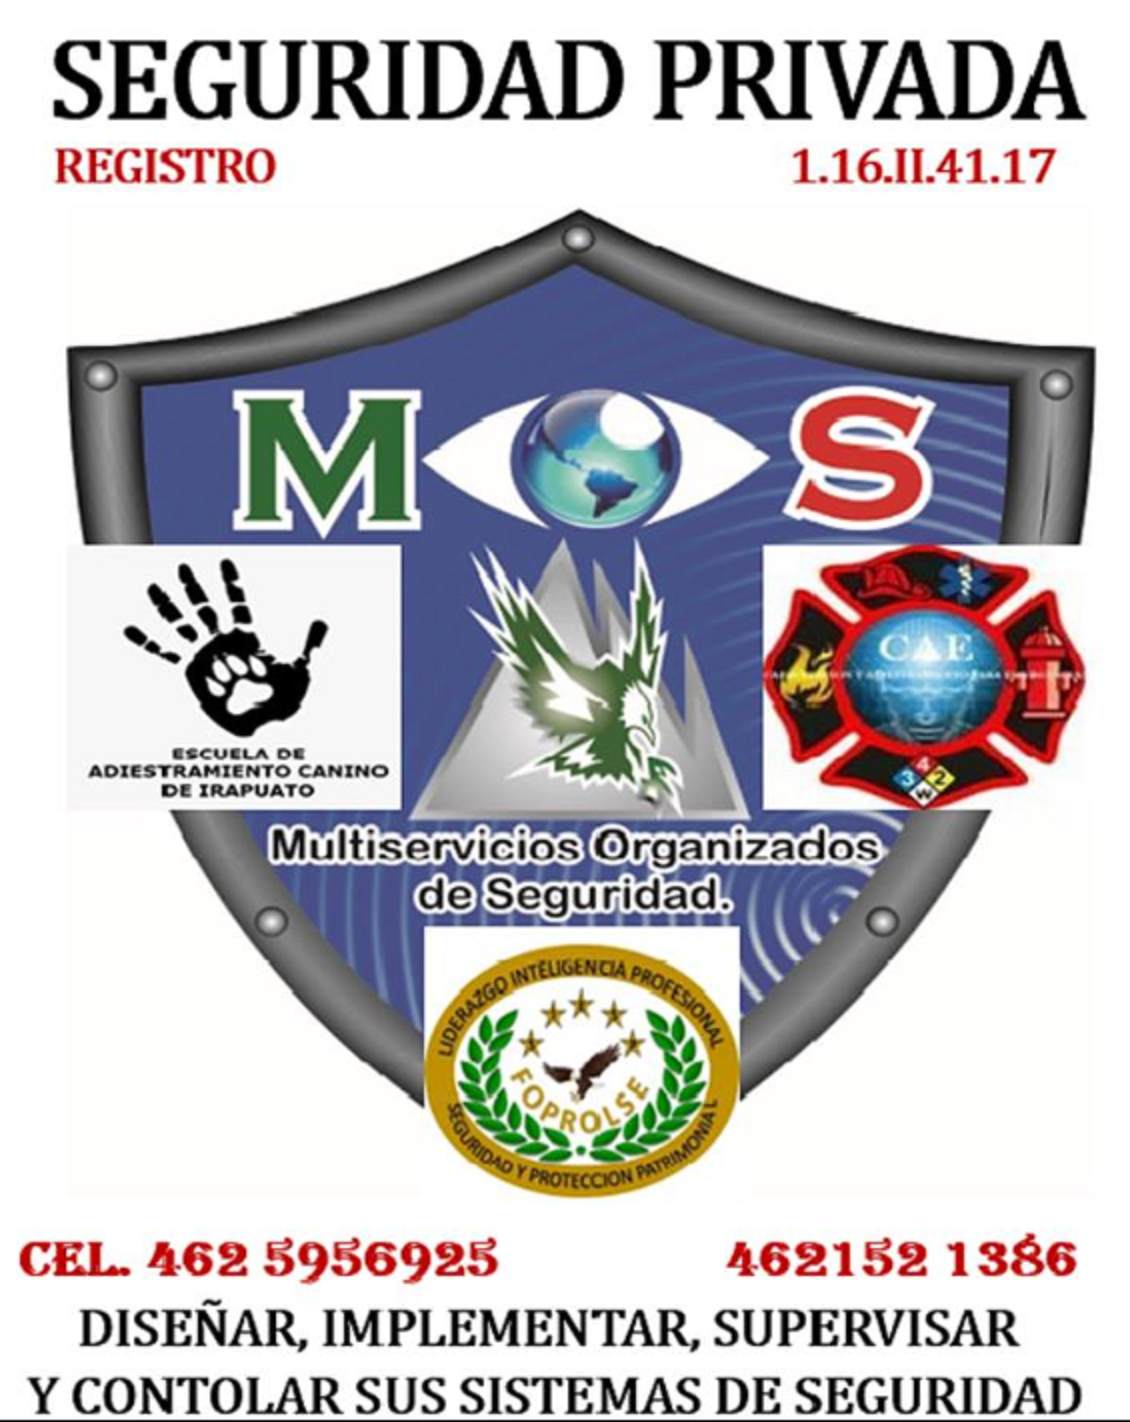 "Mos" Multiservicios Organizados De Seguridad